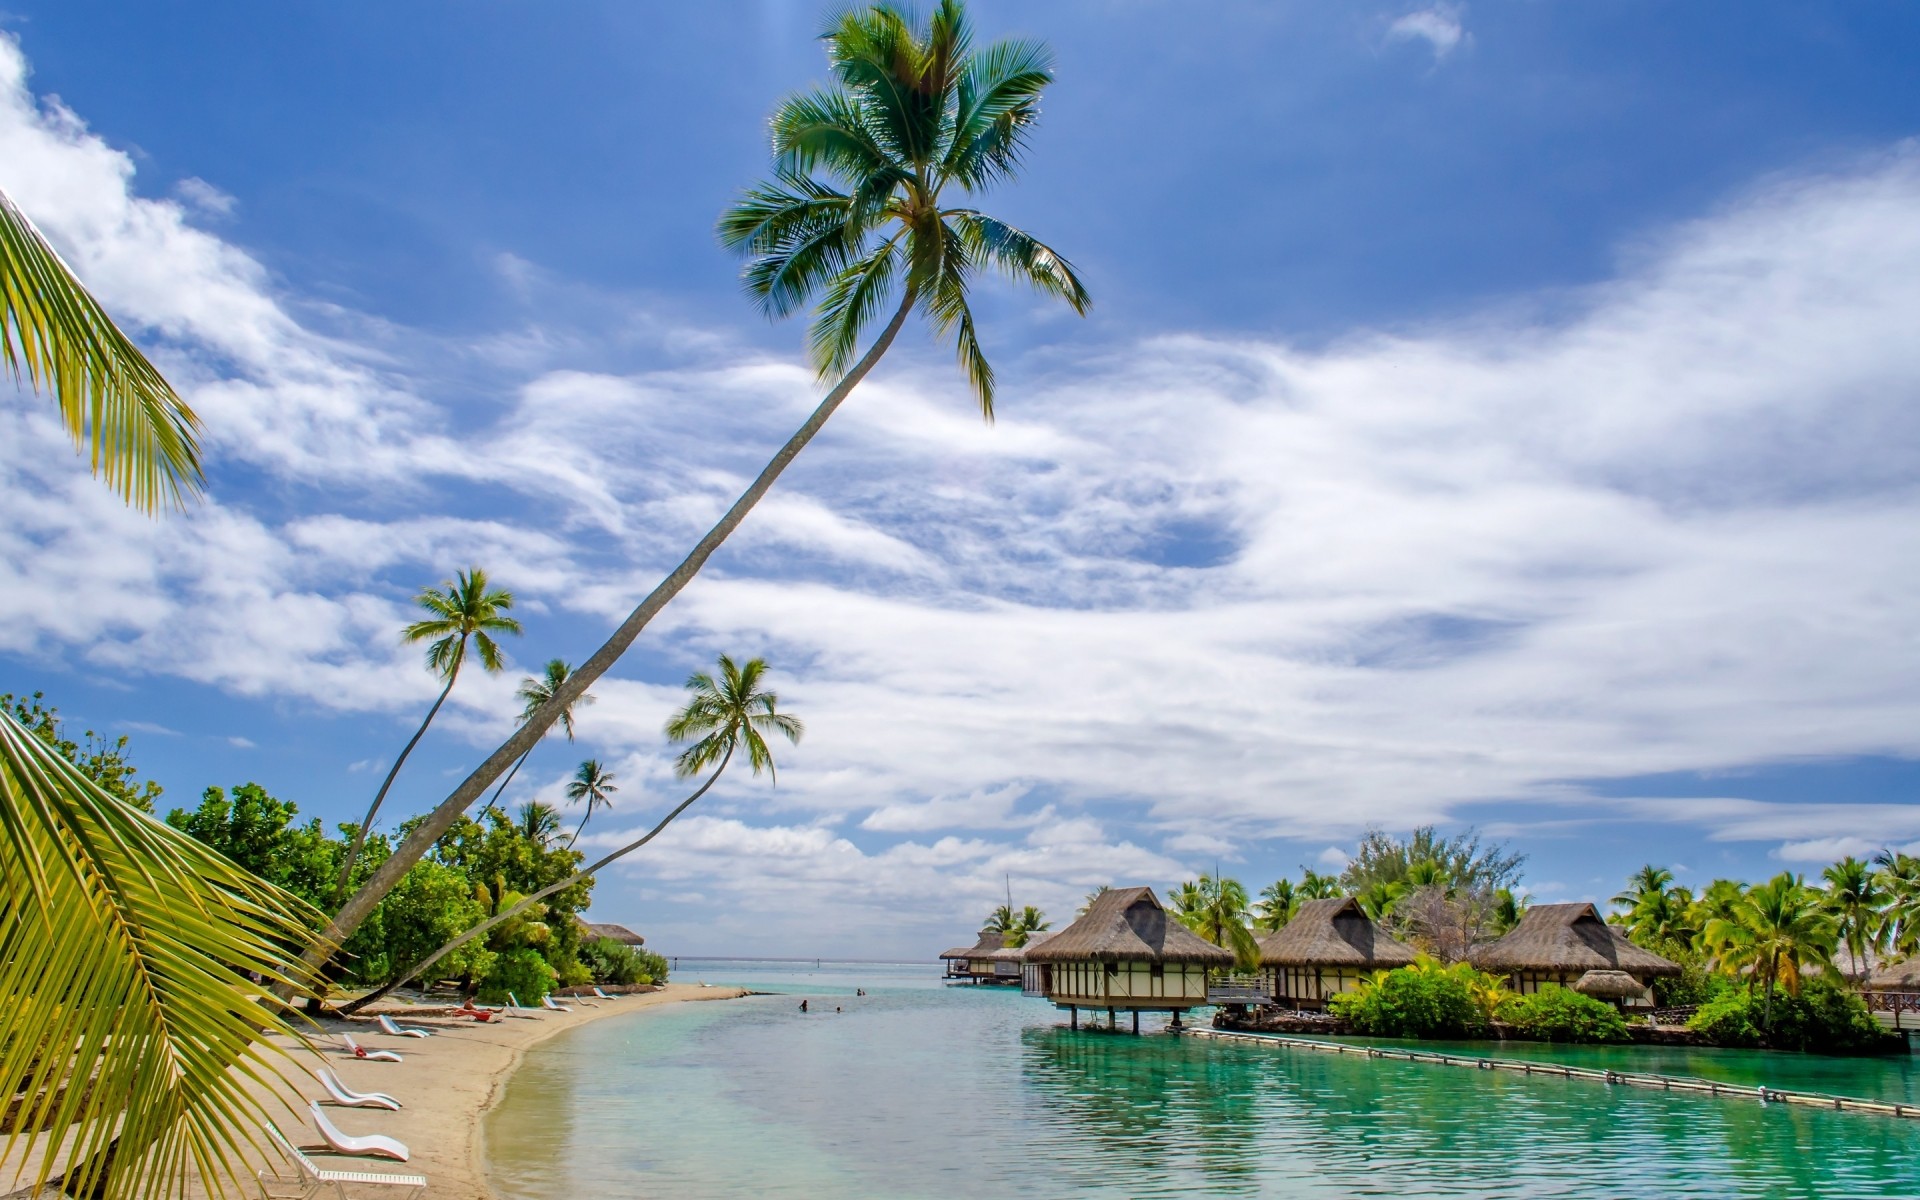 пейзажи тропический пляж ладони песок путешествия воды экзотические моря остров лето идиллия релаксация курорт кокосовое океан отпуск рай солнце дерево пальмы великолепный красивые